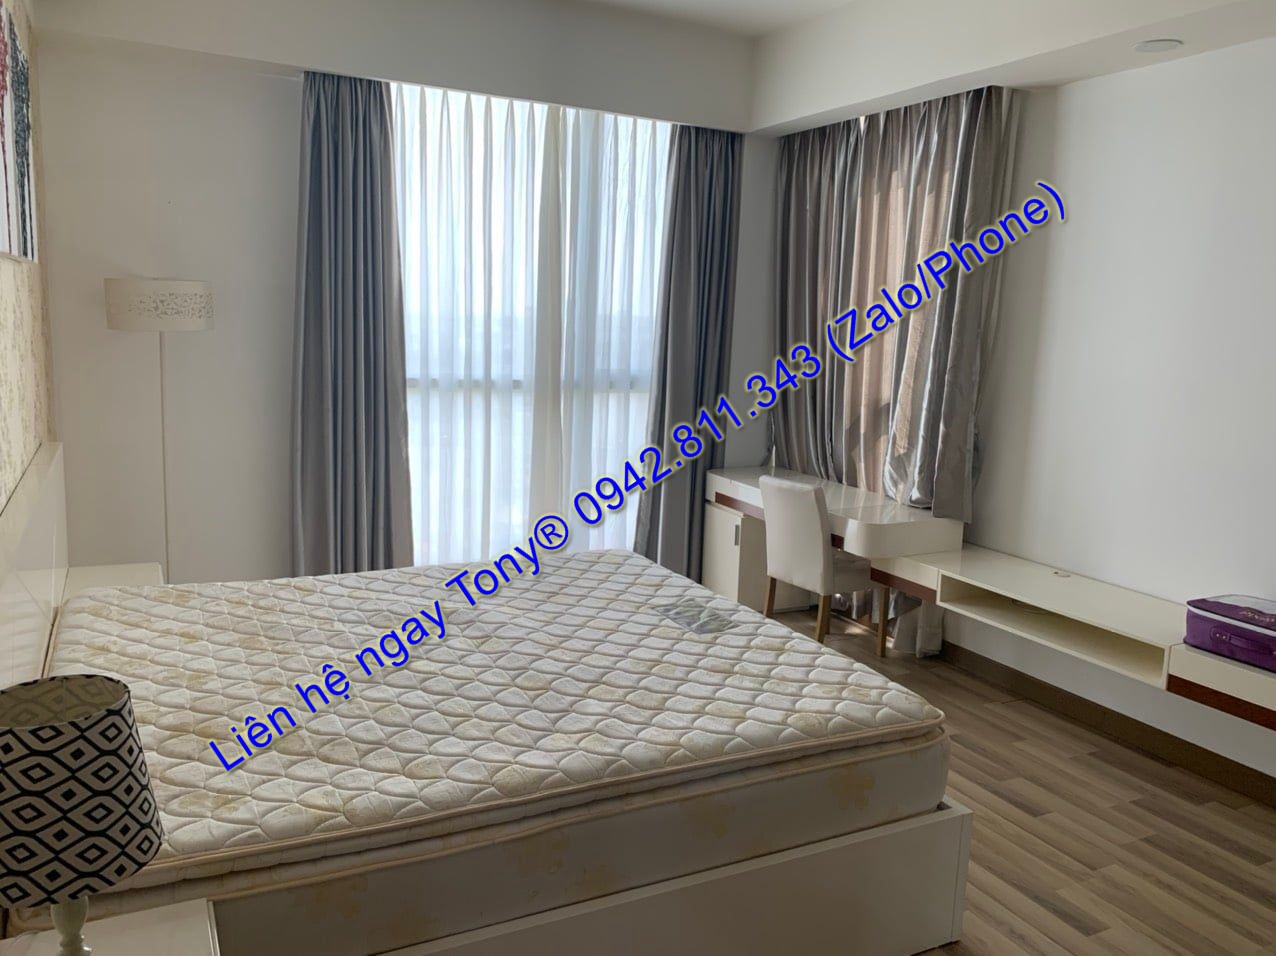 Thuê căn hộ 2 phòng ngủ DT 93m2 Sài Gòn Airport Plaza, nội thất đẹp như hình 16 Triệu Tel 0942.811.343 Tony (Zalo/phone) đi xem ngay